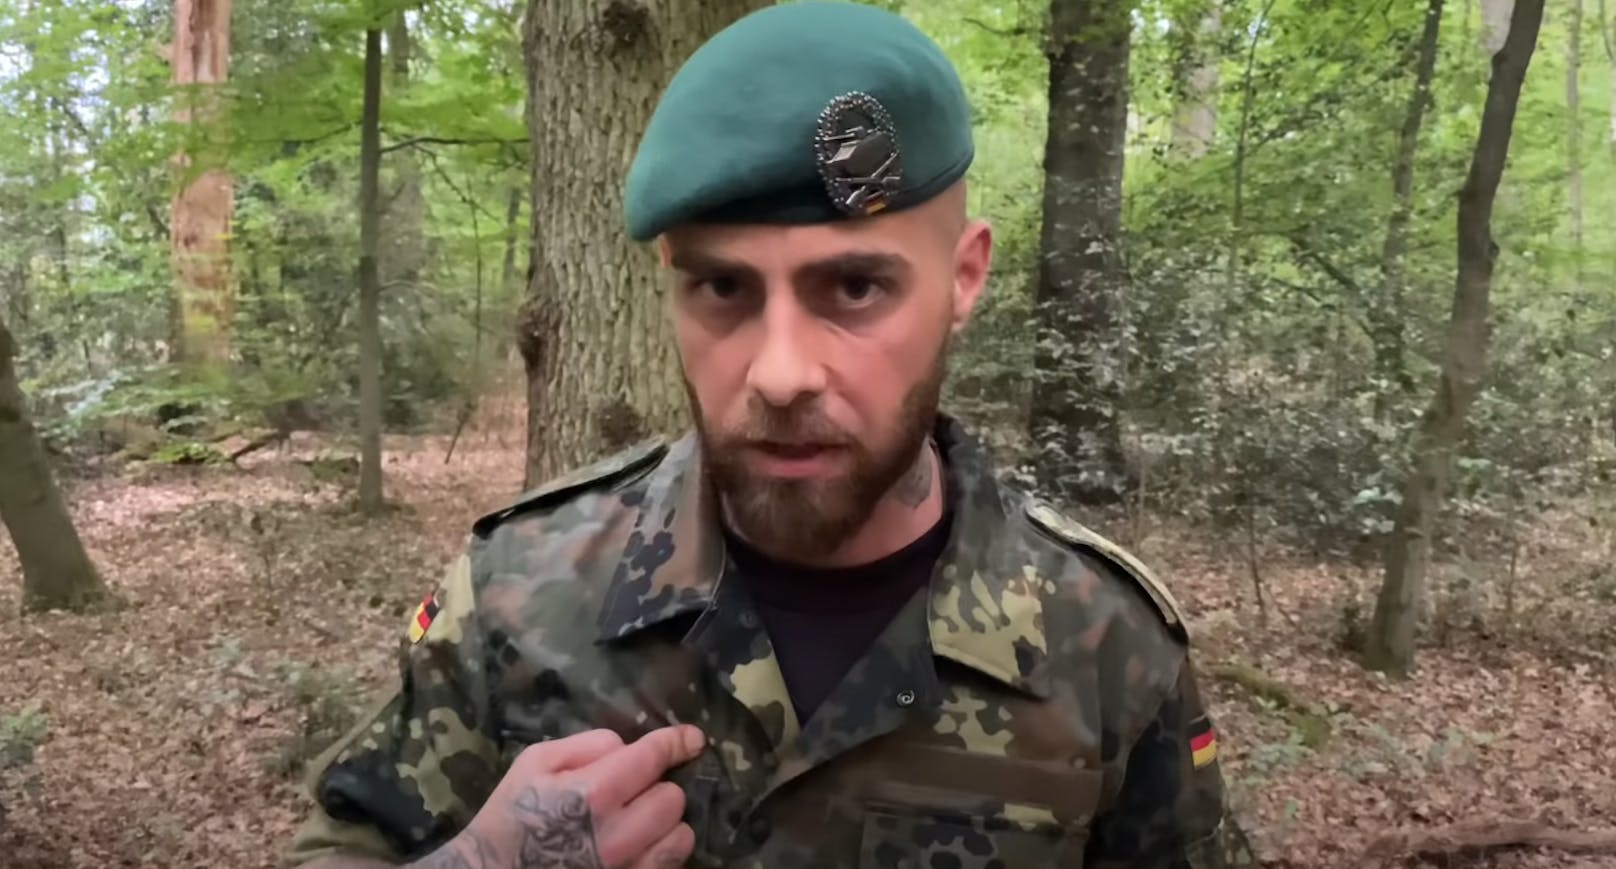 Der selbsternannte "Wehrwolf" ruft Bundeswehr- und Polizeiangehörige zum bewaffneten Widerstand auf.